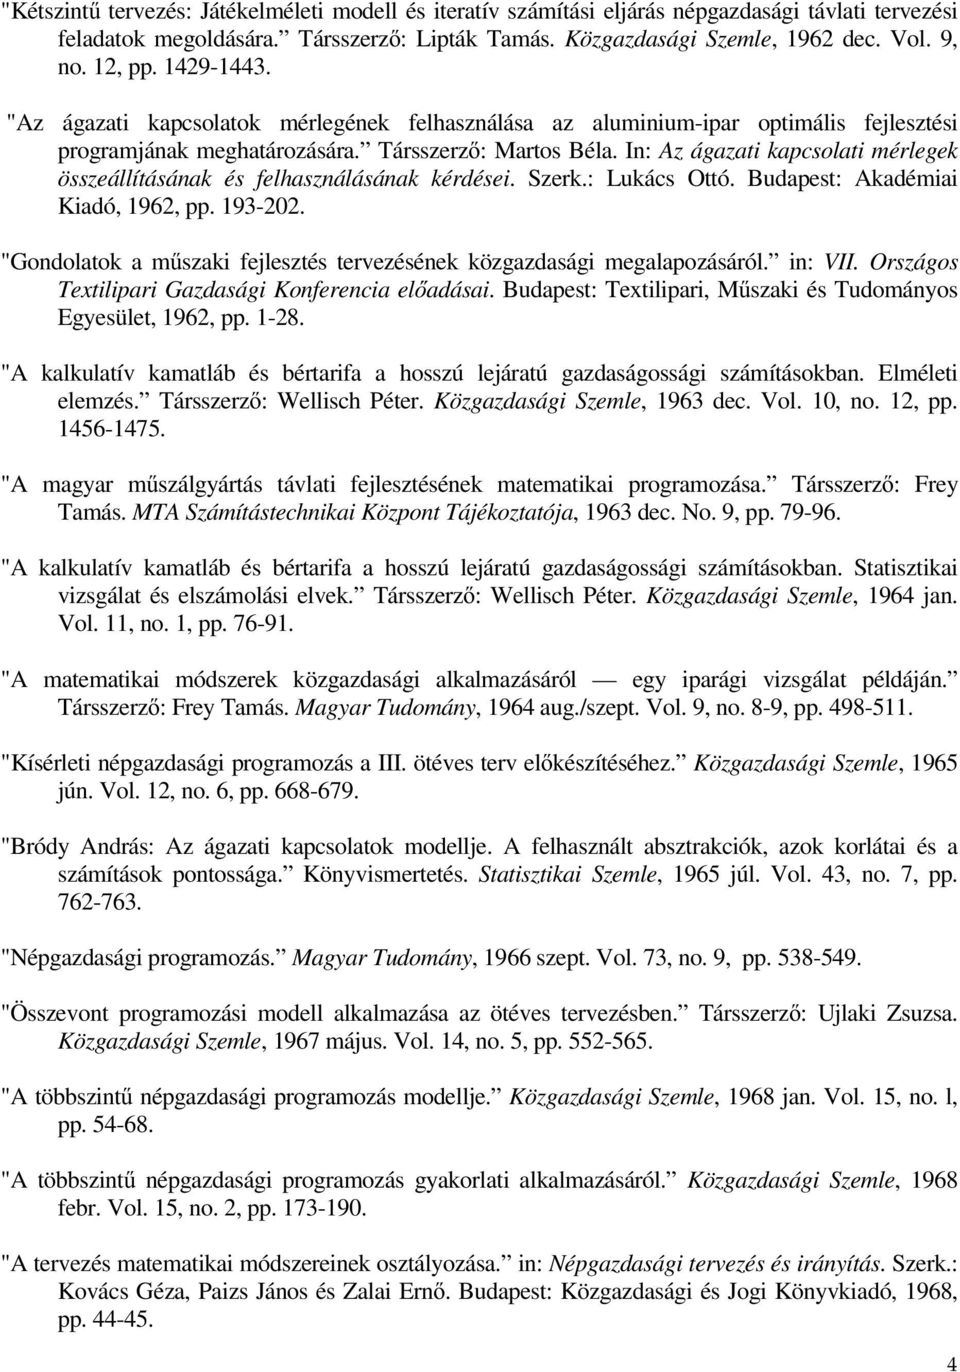 In: Az ágazati kapcsolati mérlegek összeállításának és felhasználásának kérdései. Szerk.: Lukács Ottó. Budapest: Akadémiai Kiadó, 1962, pp. 193-202.